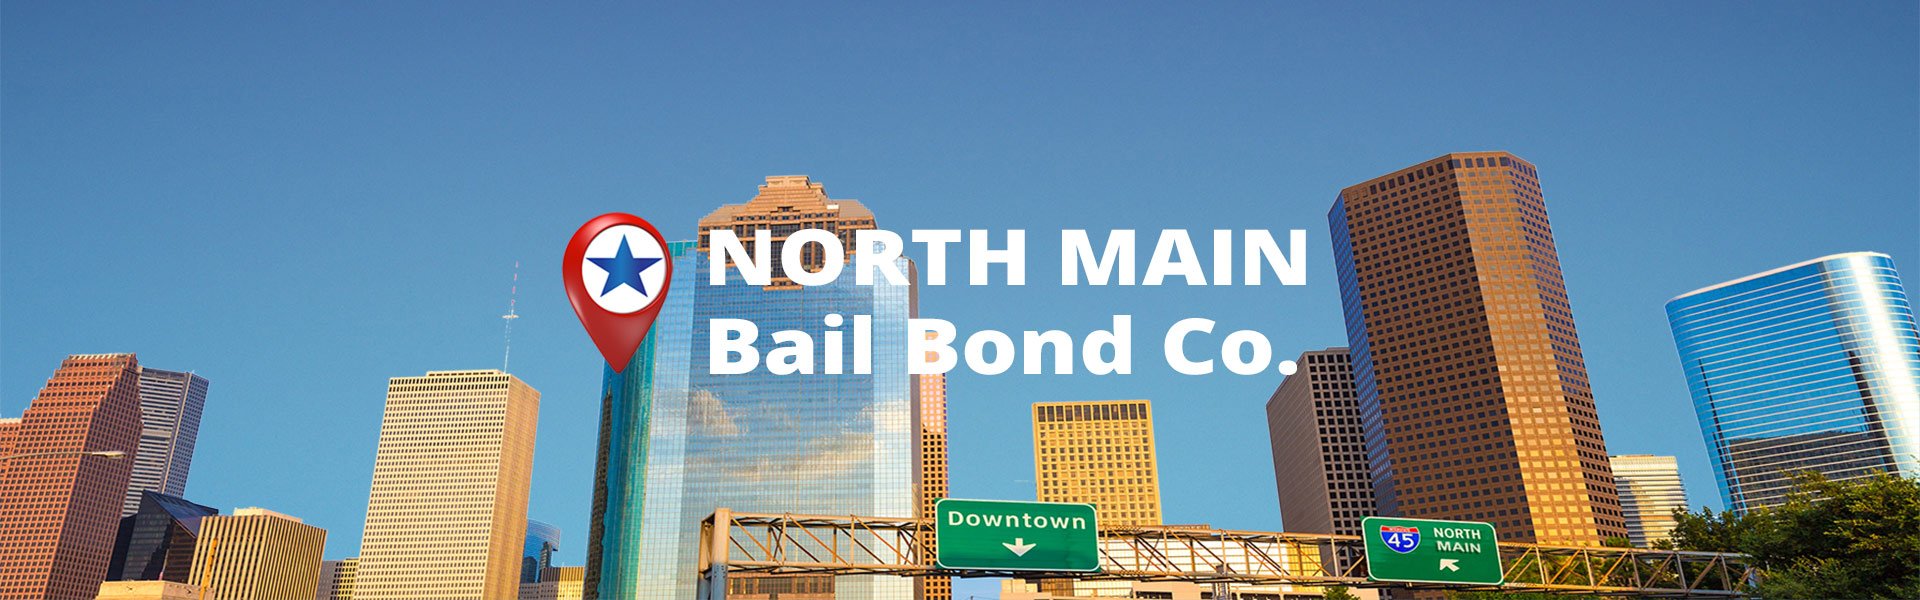 North Main Bail Bond Company in Houston